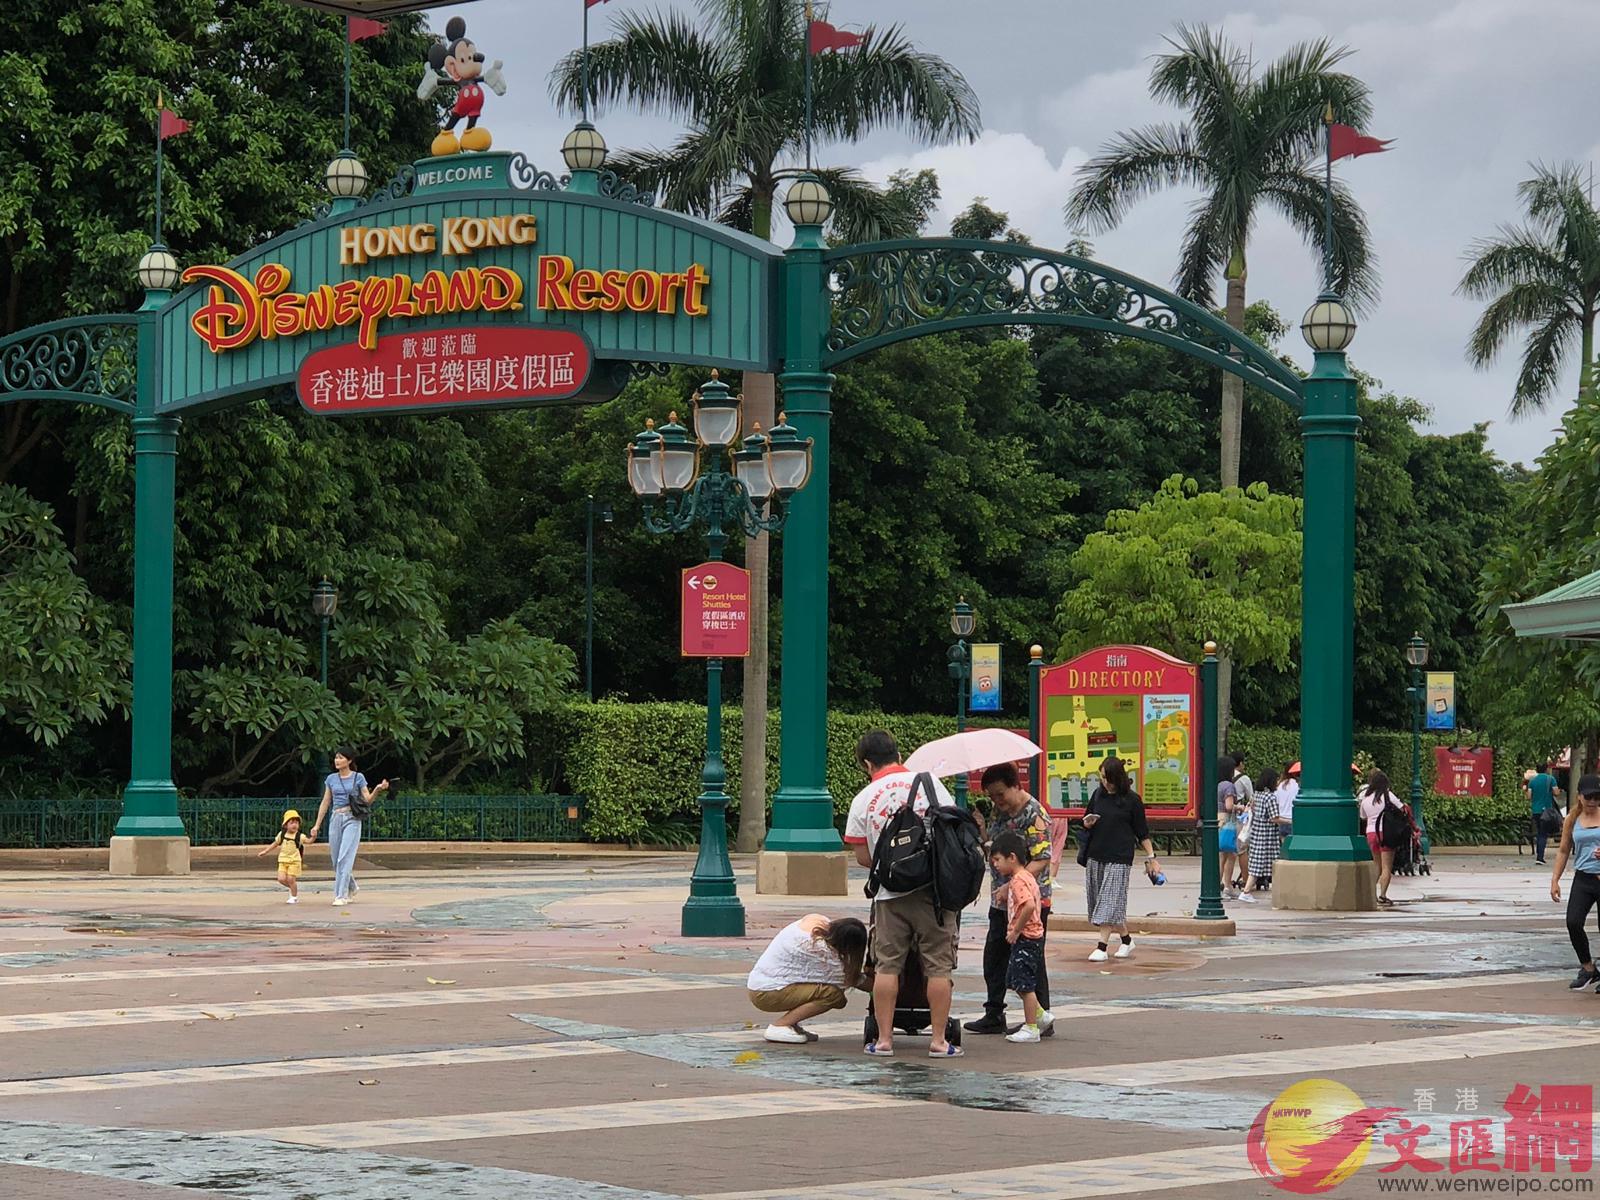 香港迪士尼樂園一直是內地訪港團行程首選A有遊客向記者表示A內裡的機動遊戲現時無須排隊A很快就玩畢整個樂園C 